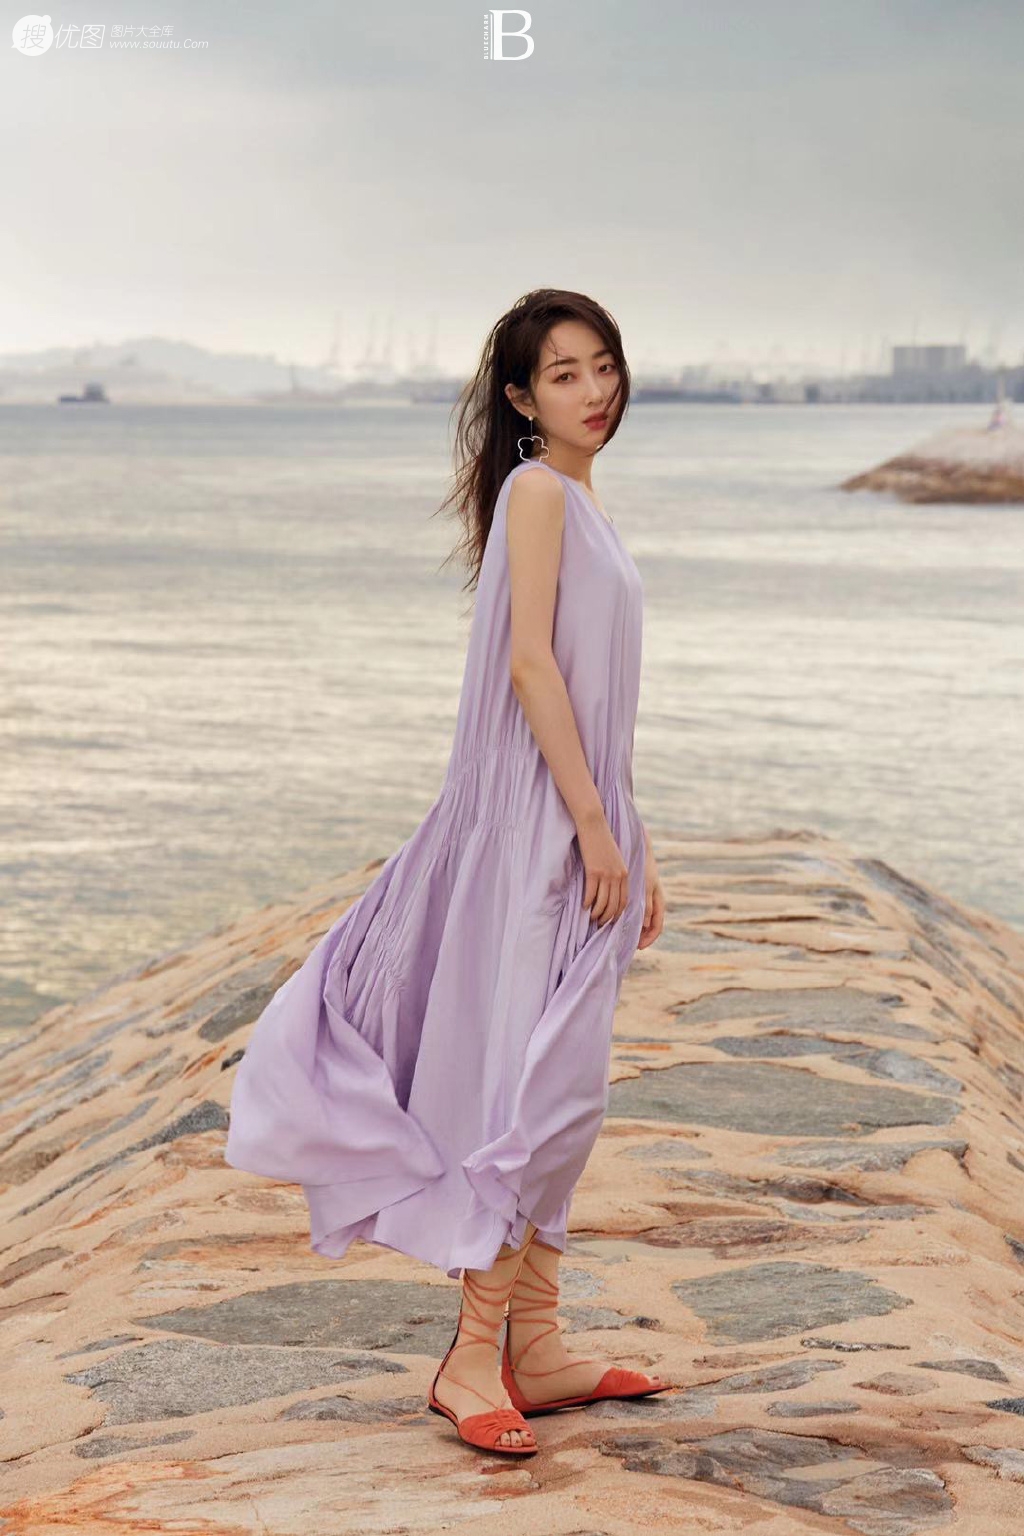 蒋梦婕《顺光而行》主题新加坡旅拍写真，紫衣长裙清新优雅而迷人